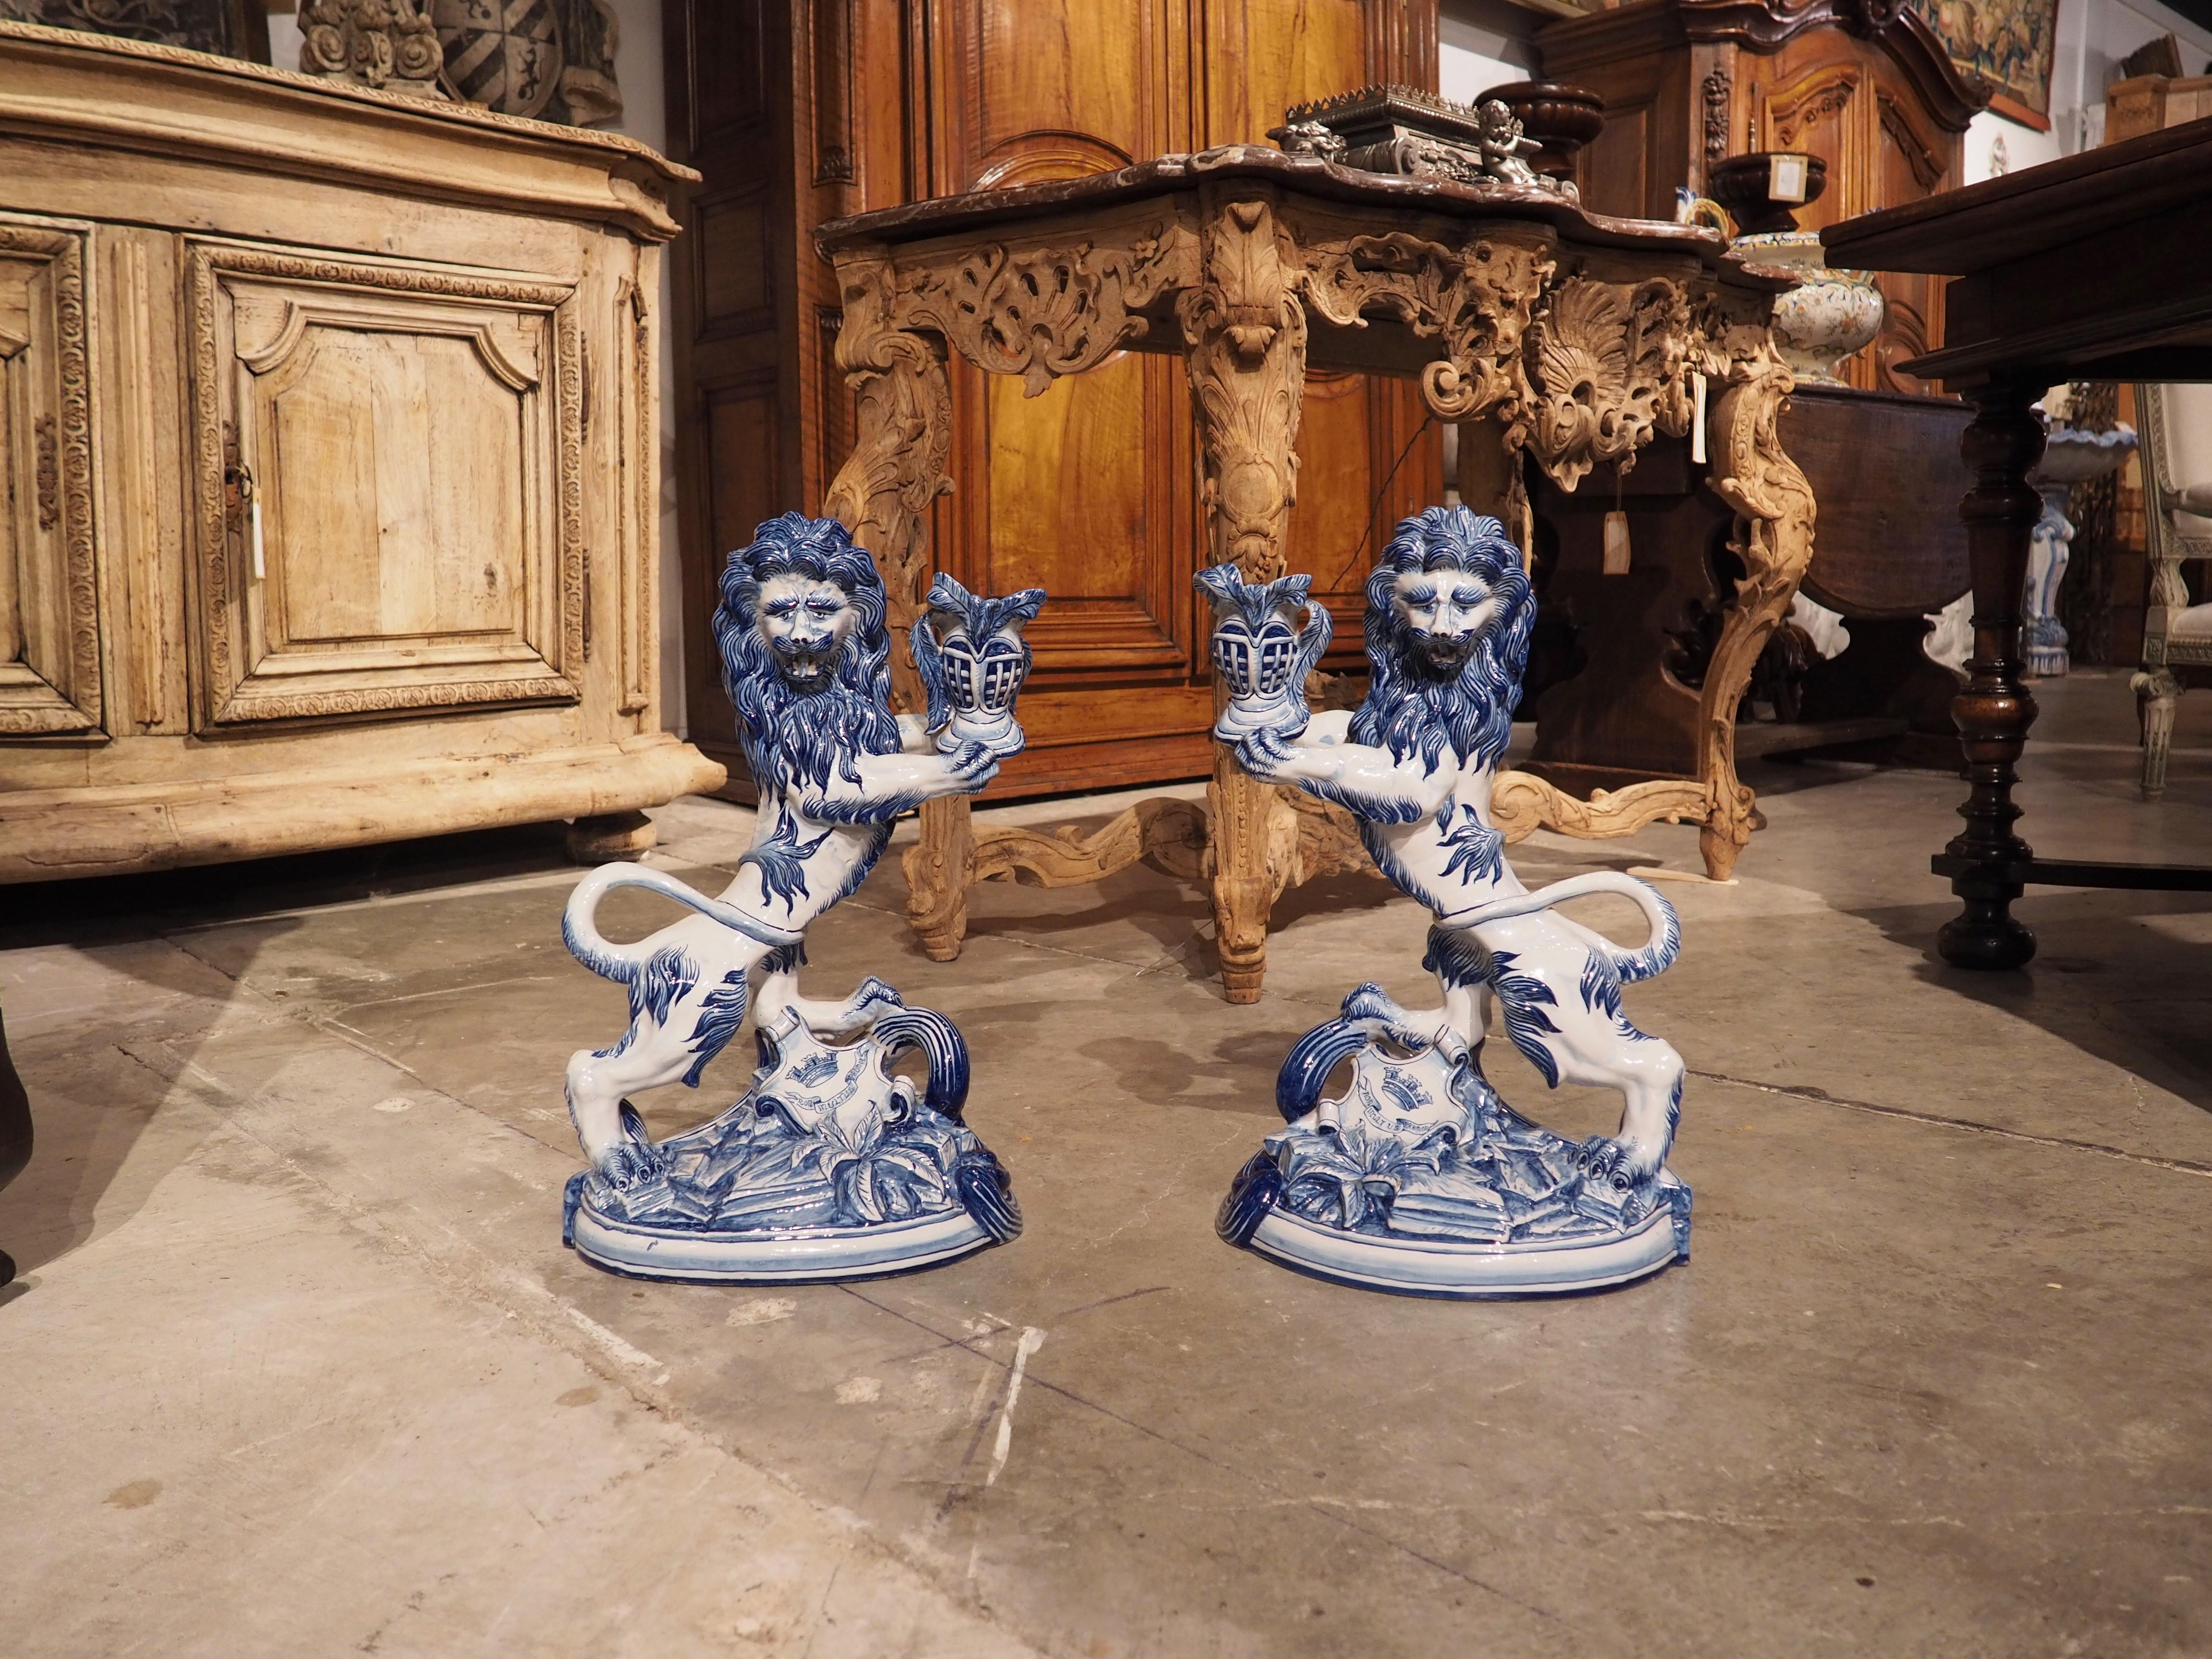 Une belle paire de bougeoirs peints à la main en bleu cobalt et blanc, ces lions en faïence datent d'environ 1890. D'après les marques de production situées sous la patte arrière de chaque lion, les bougeoirs ont été produits à Saint-Clément, par